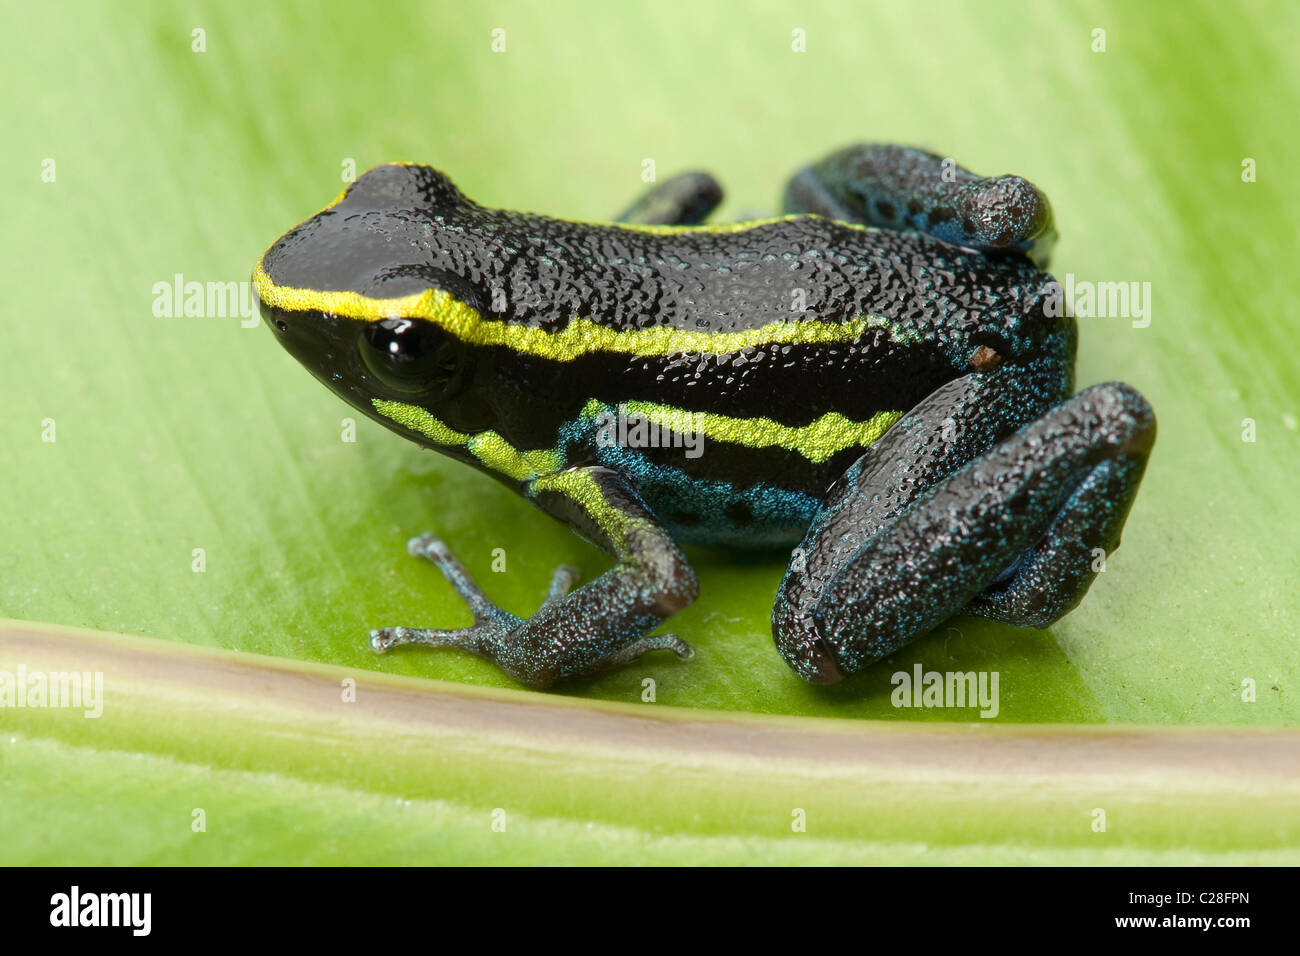 Sky-blue Poison Frog (Hyloxalus azureiventris) on a leaf. Stock Photo